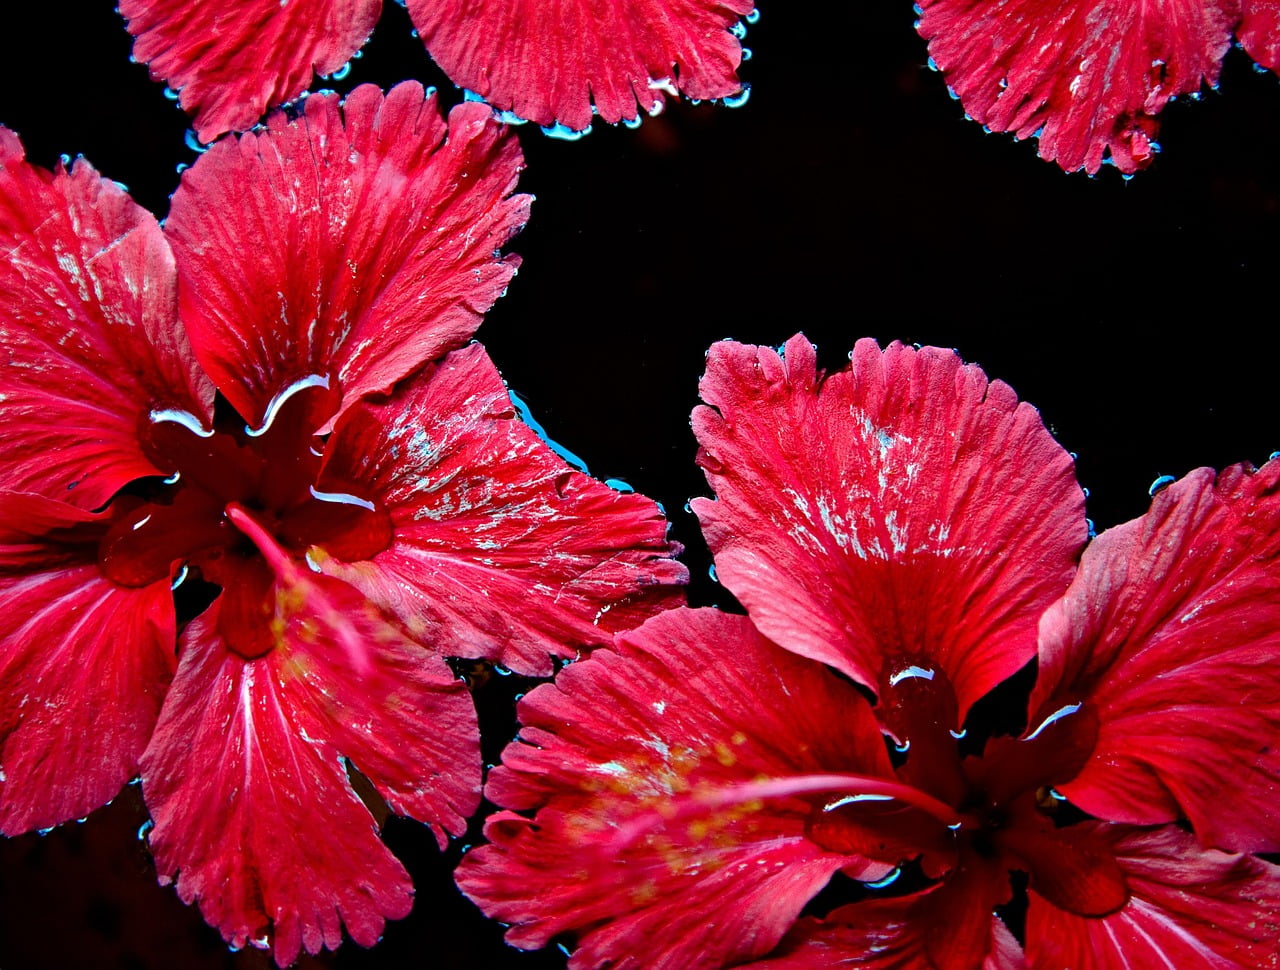 Can we eat hibiscus petals